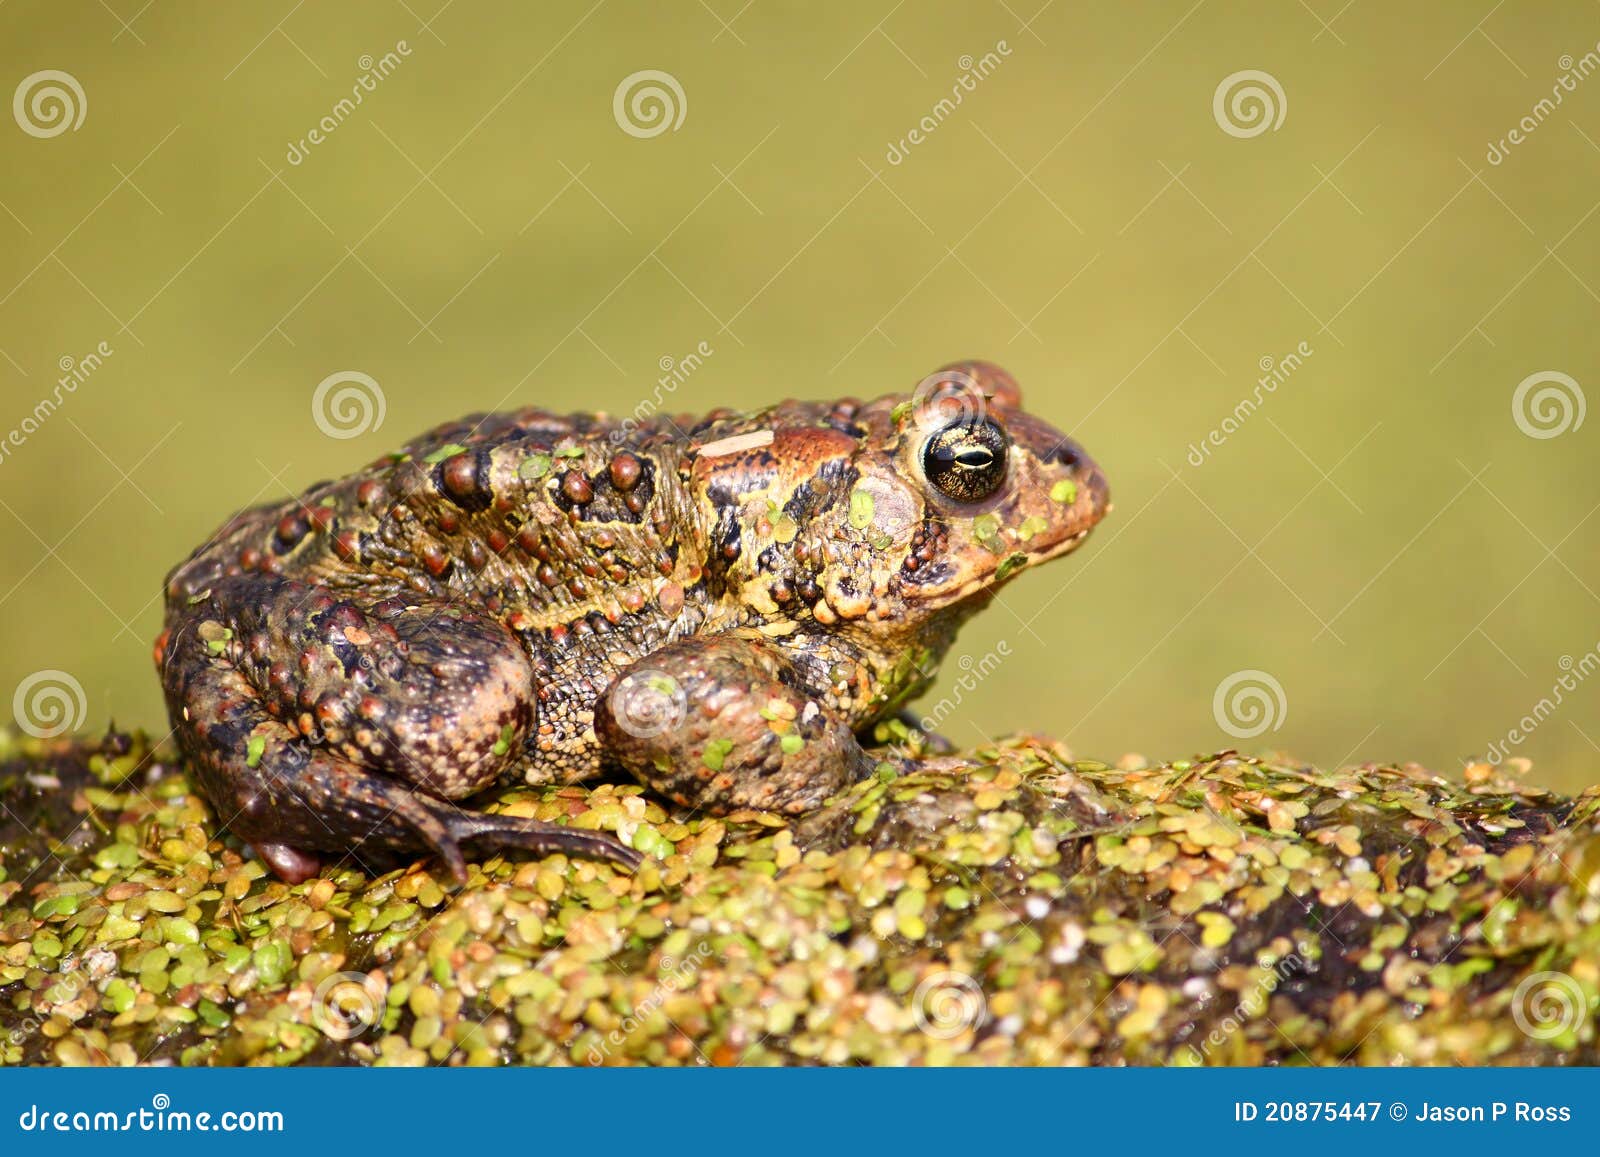 american toad (bufo americanus)